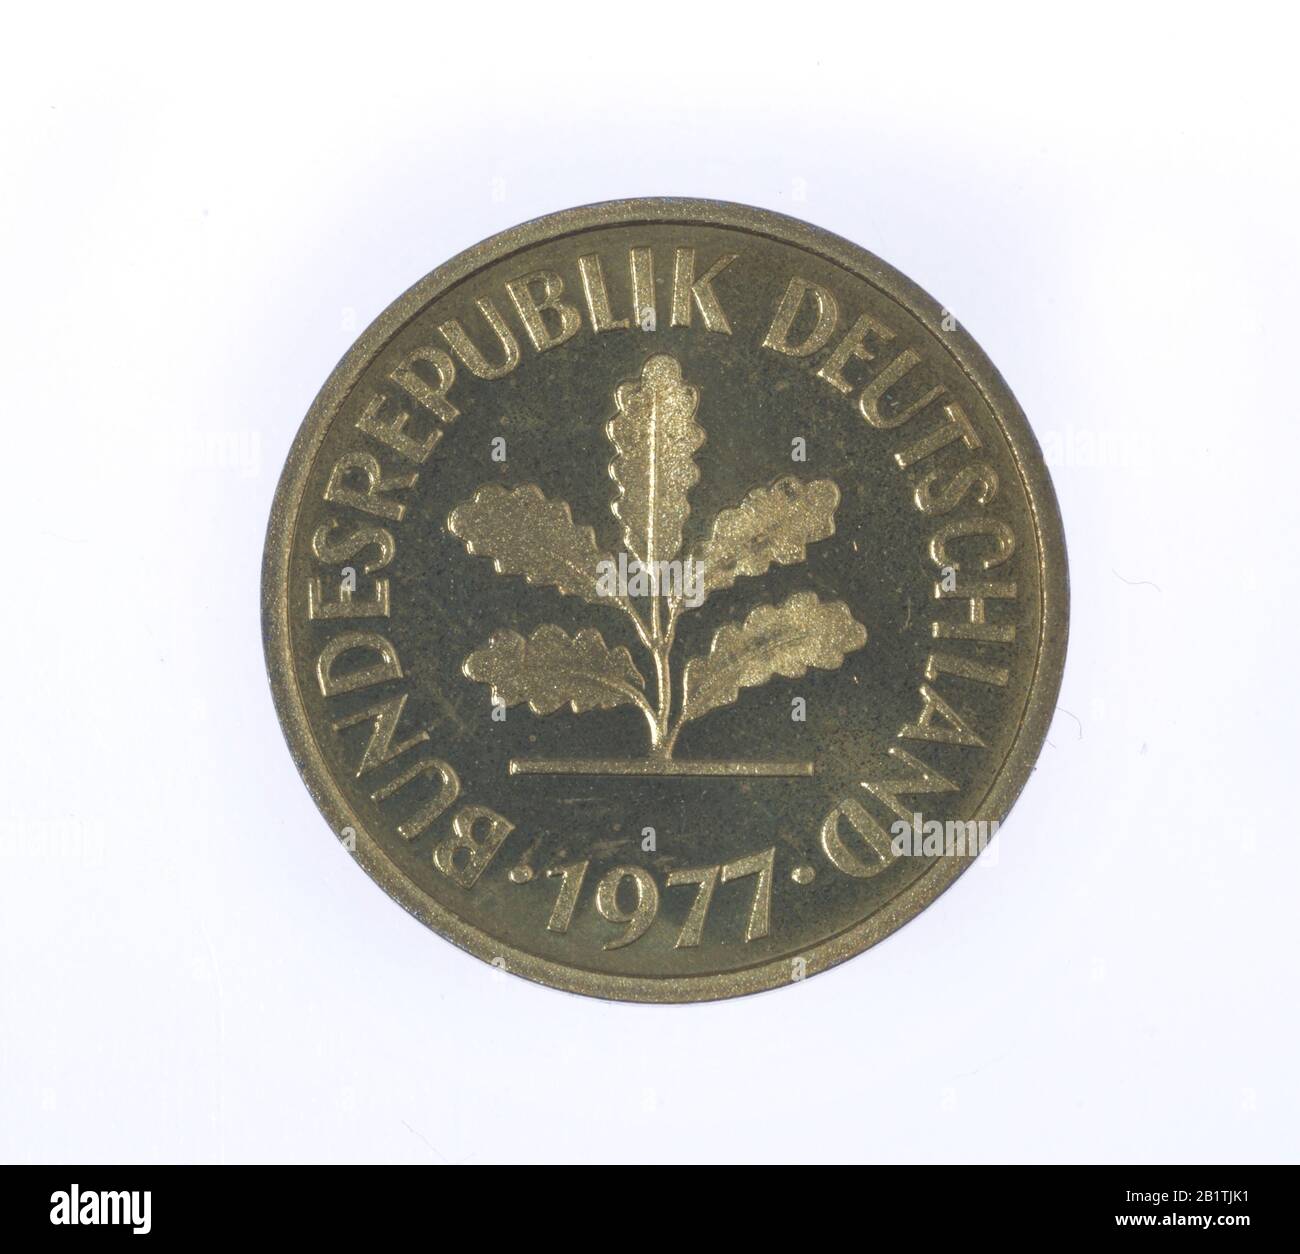 Geldmünze, 5 Pfennig, Bundesrepublik Deutschland Foto de stock